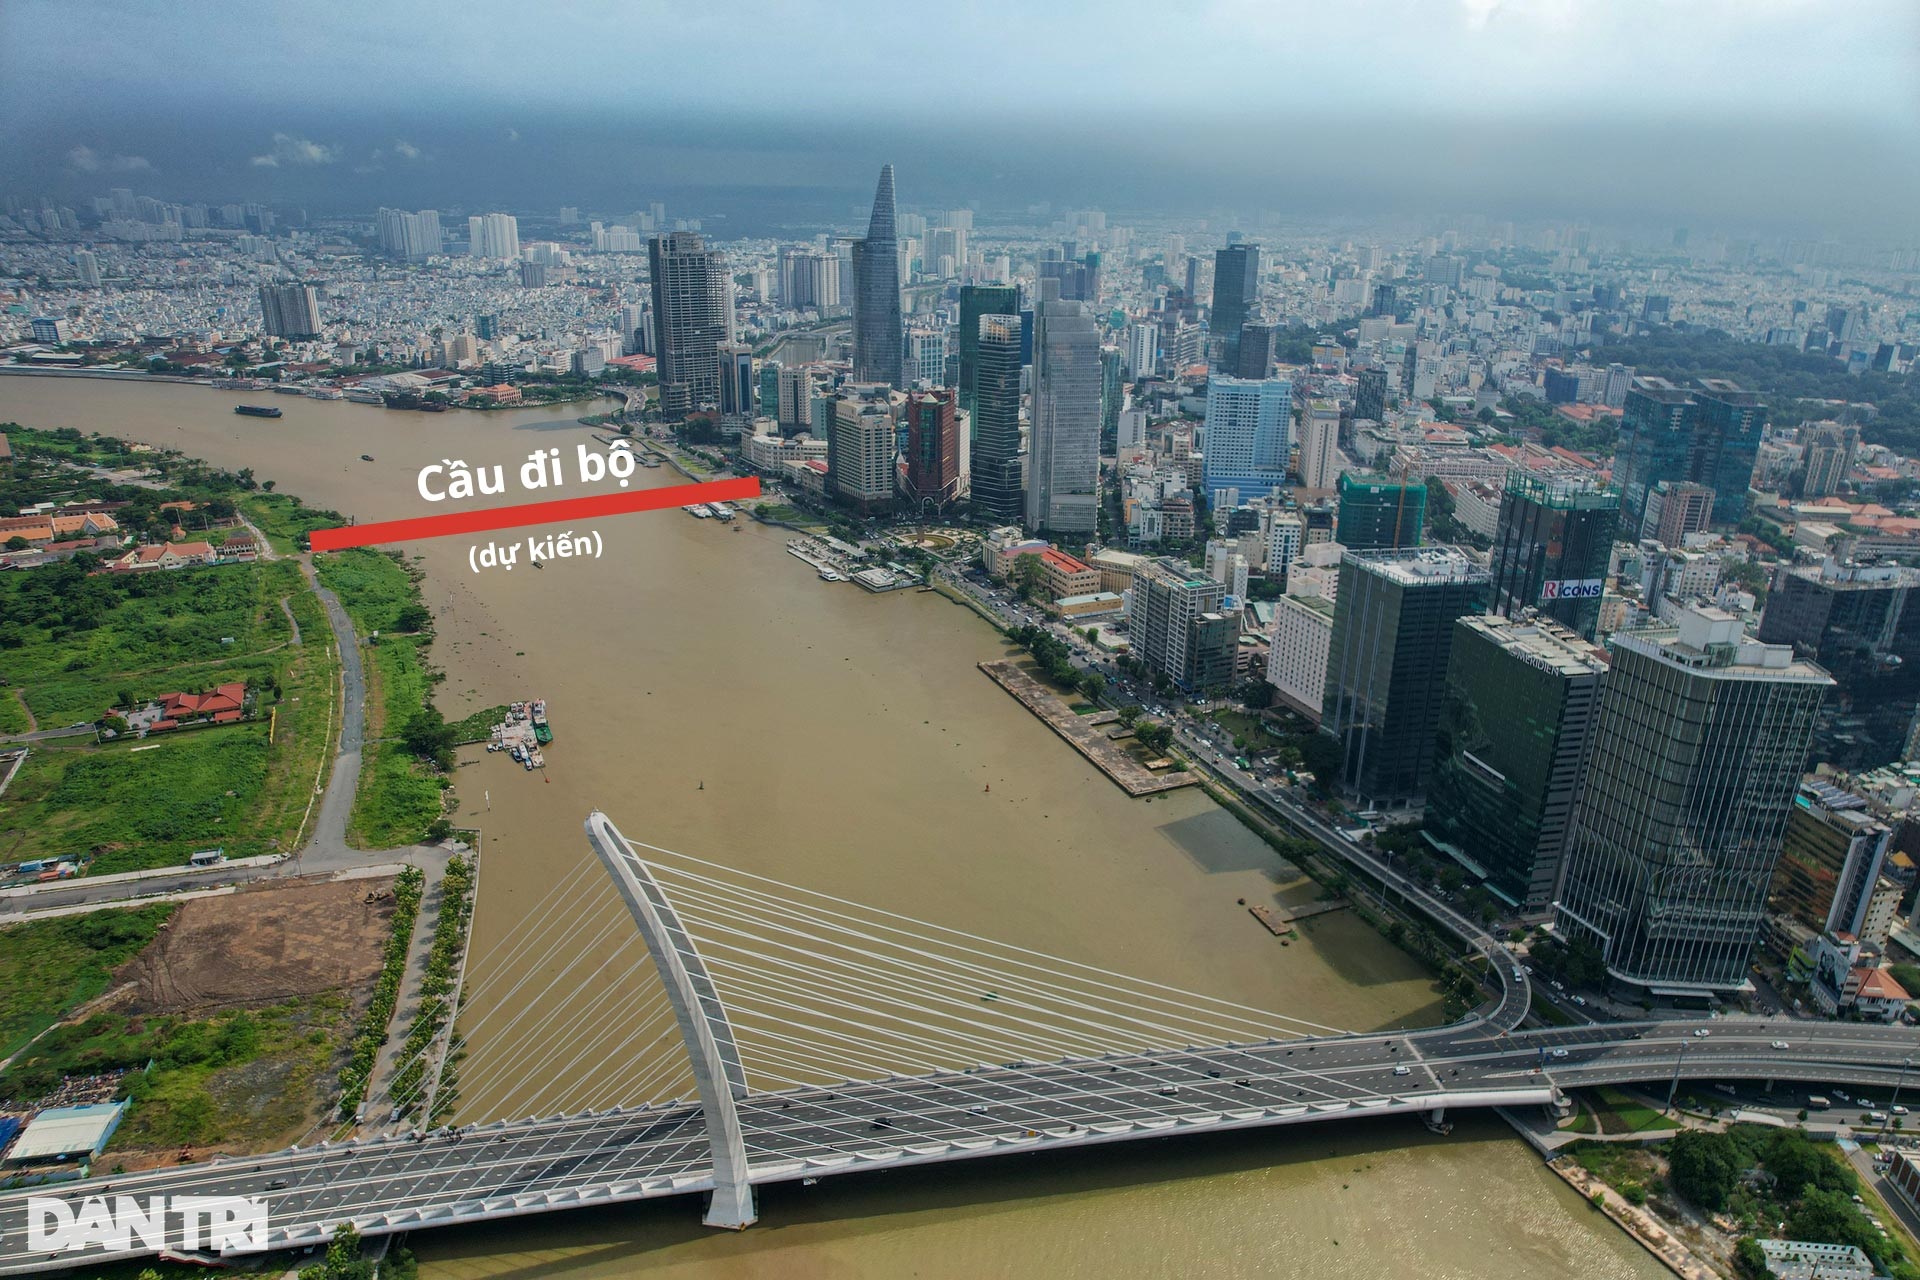 Ngắm thiết kế cầu đi bộ hình lá dừa nước trên sông Sài Gòn - Ảnh 2.